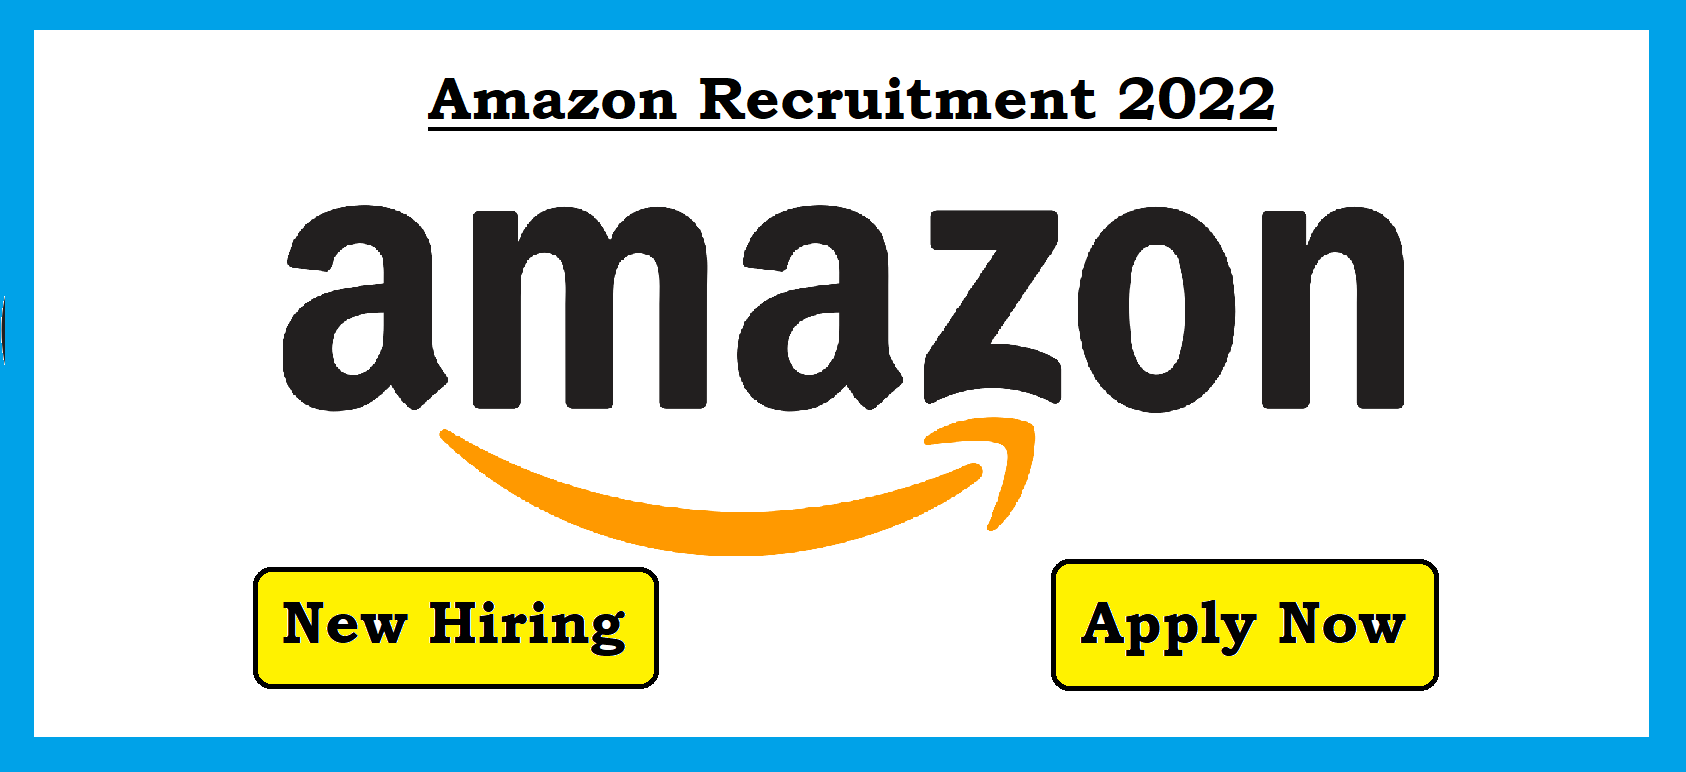 Amazon recruitment 2022